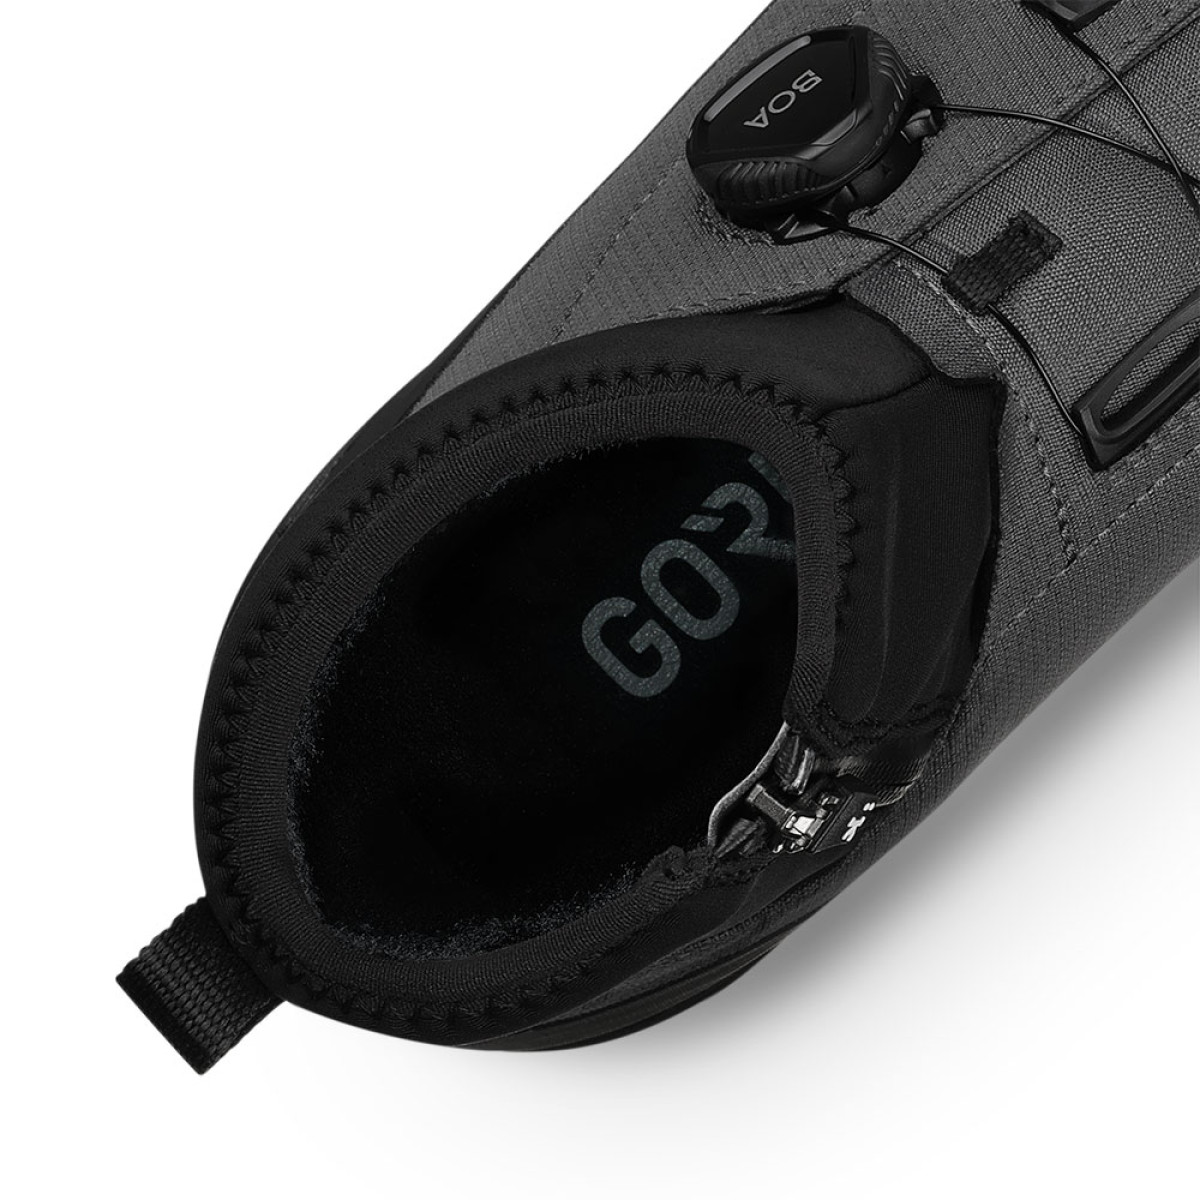 Fizik Terra Nanuq X2 GTX žieminiai batai / Black - Grey